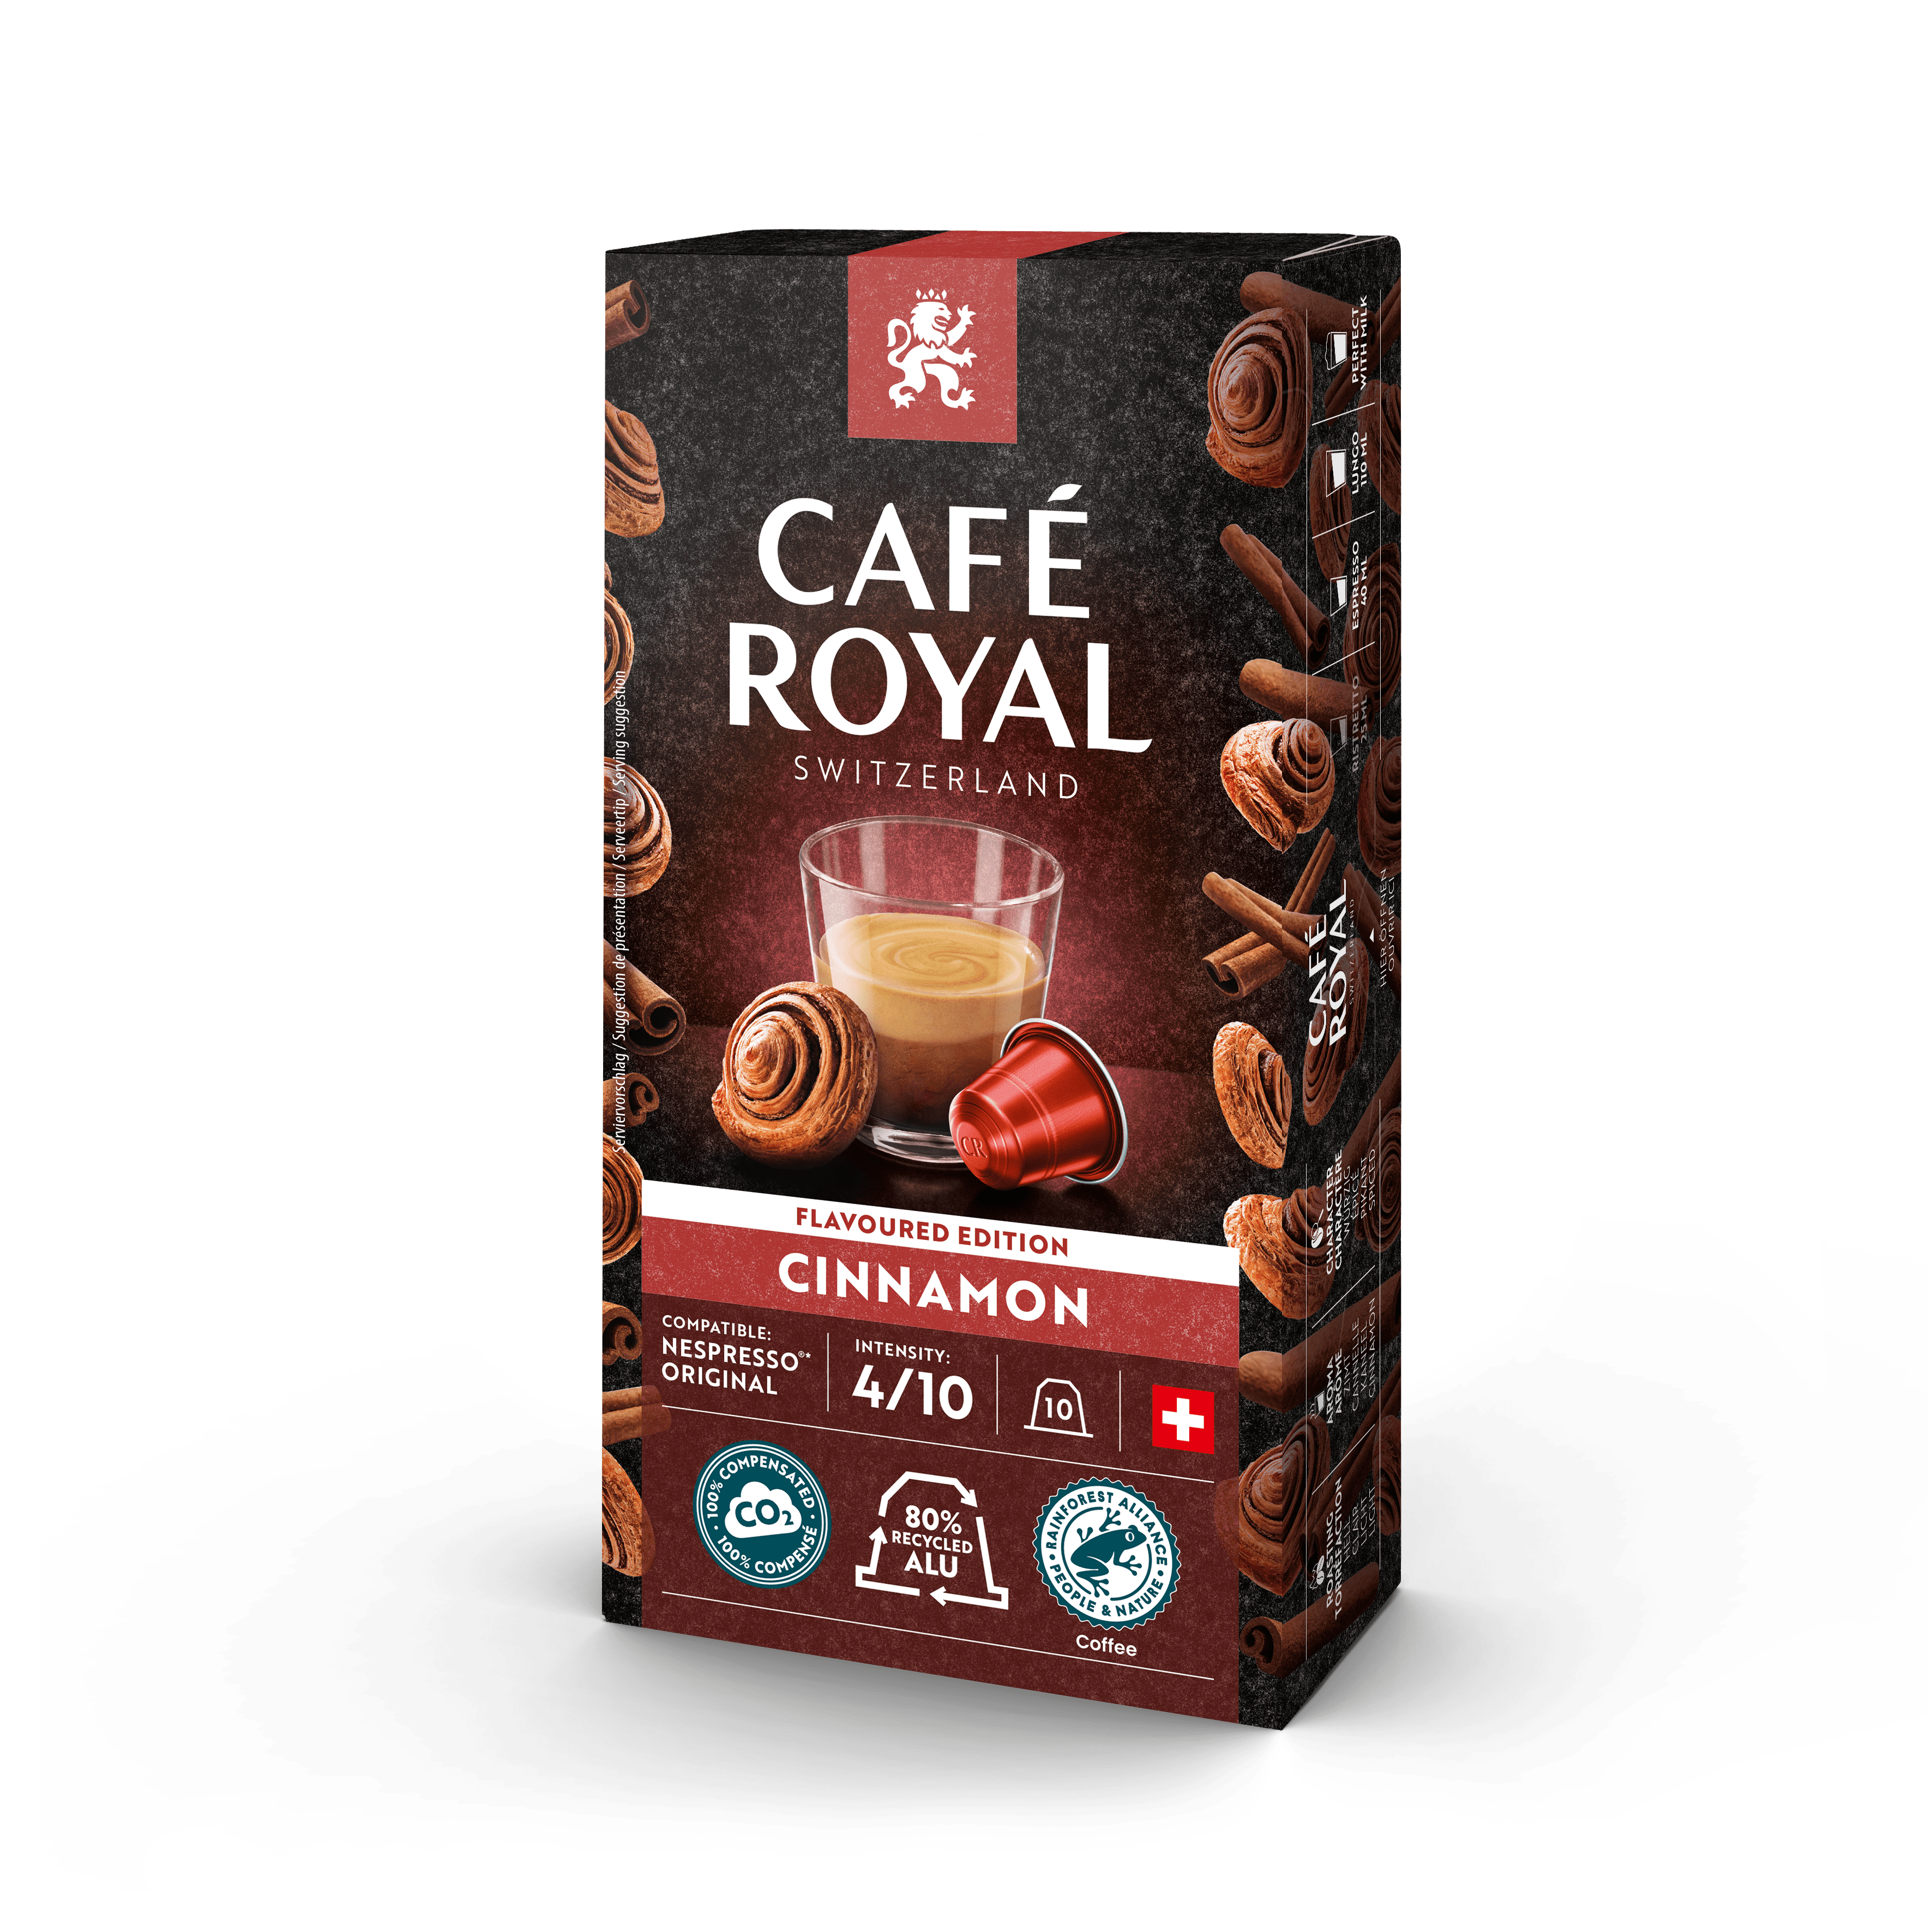 Cafe Royal Cannelle Capsules de café aromatisées à la cannelle compatibles Nespresso®* 